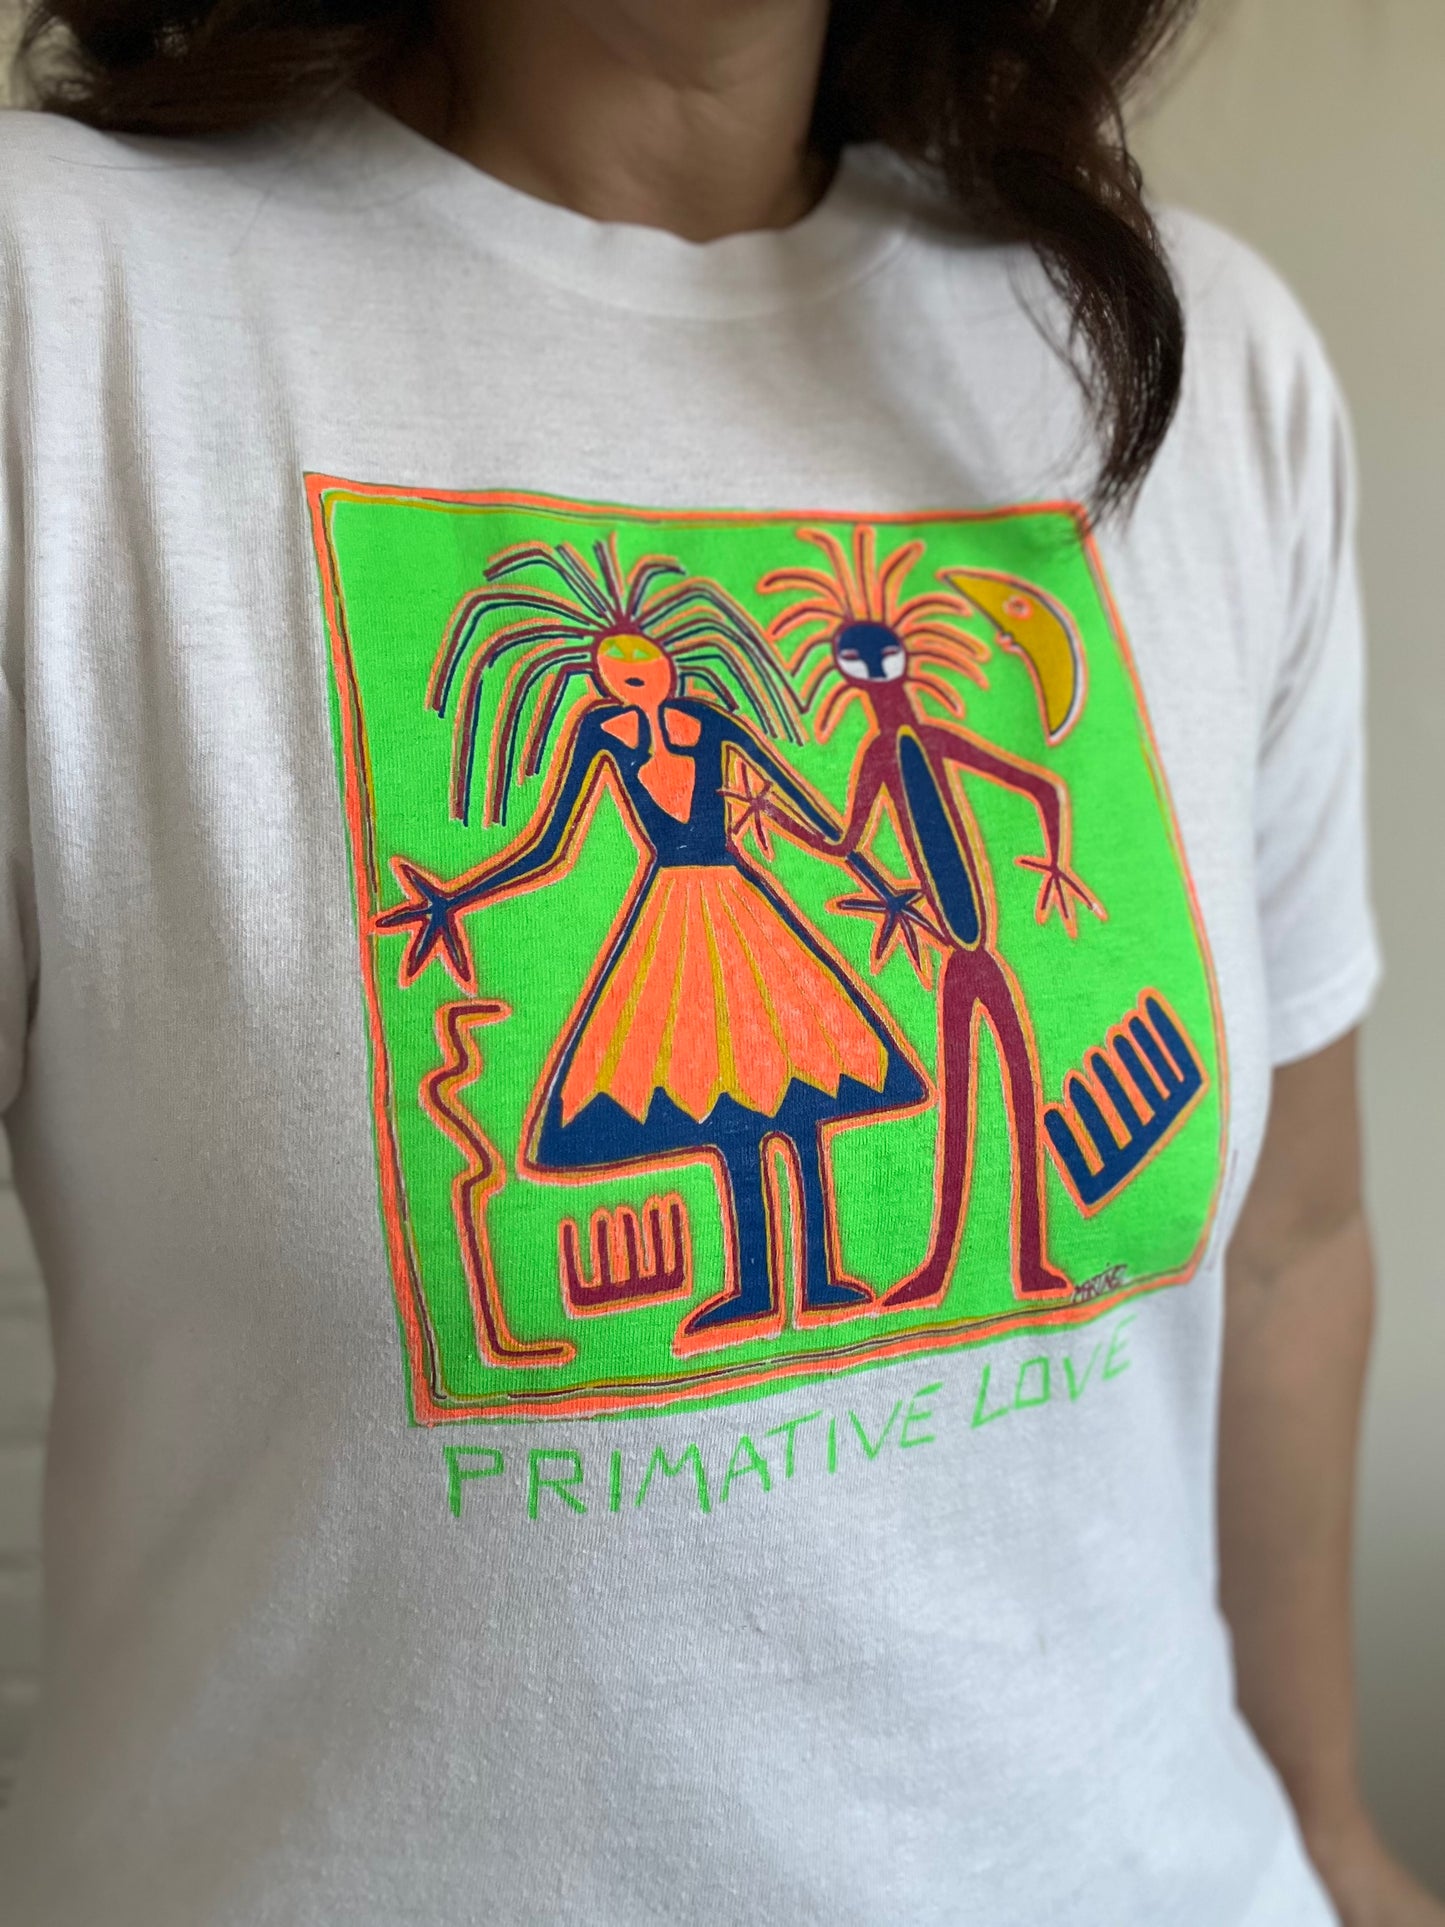 Primitive Love T-Shirt - Size M/L